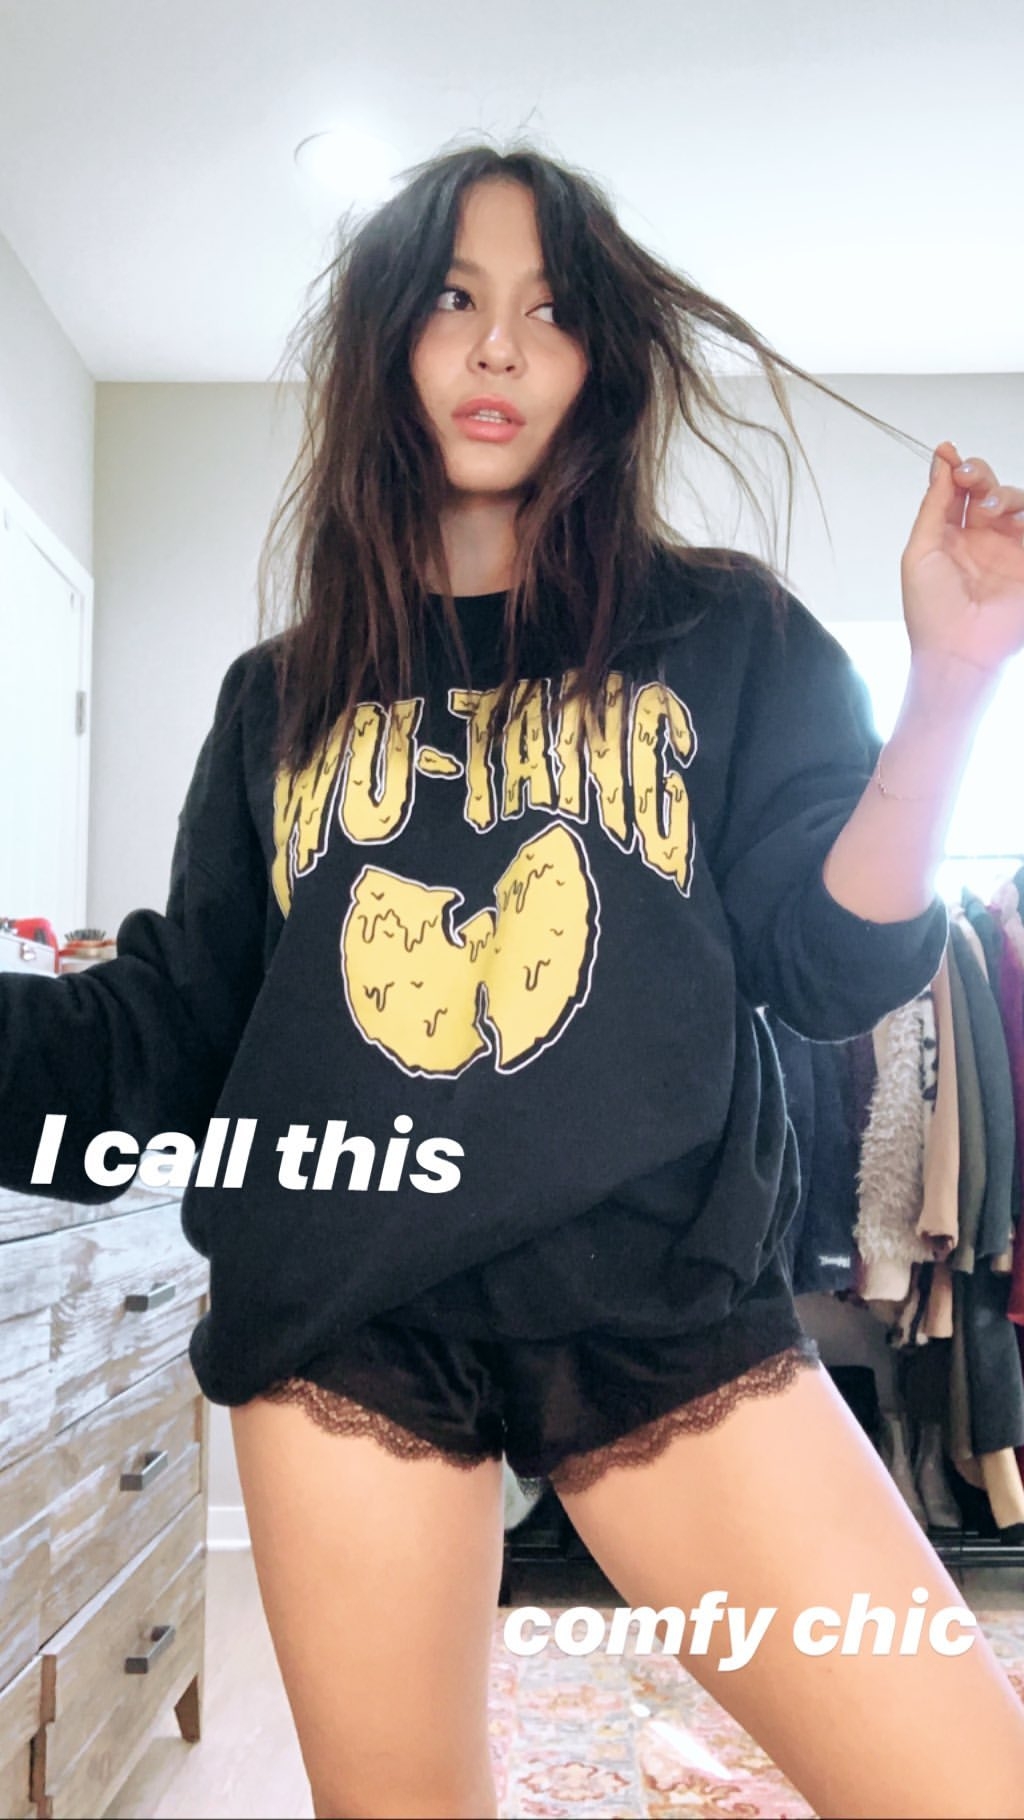 Stella Hudgens â€“ Instagram and social media